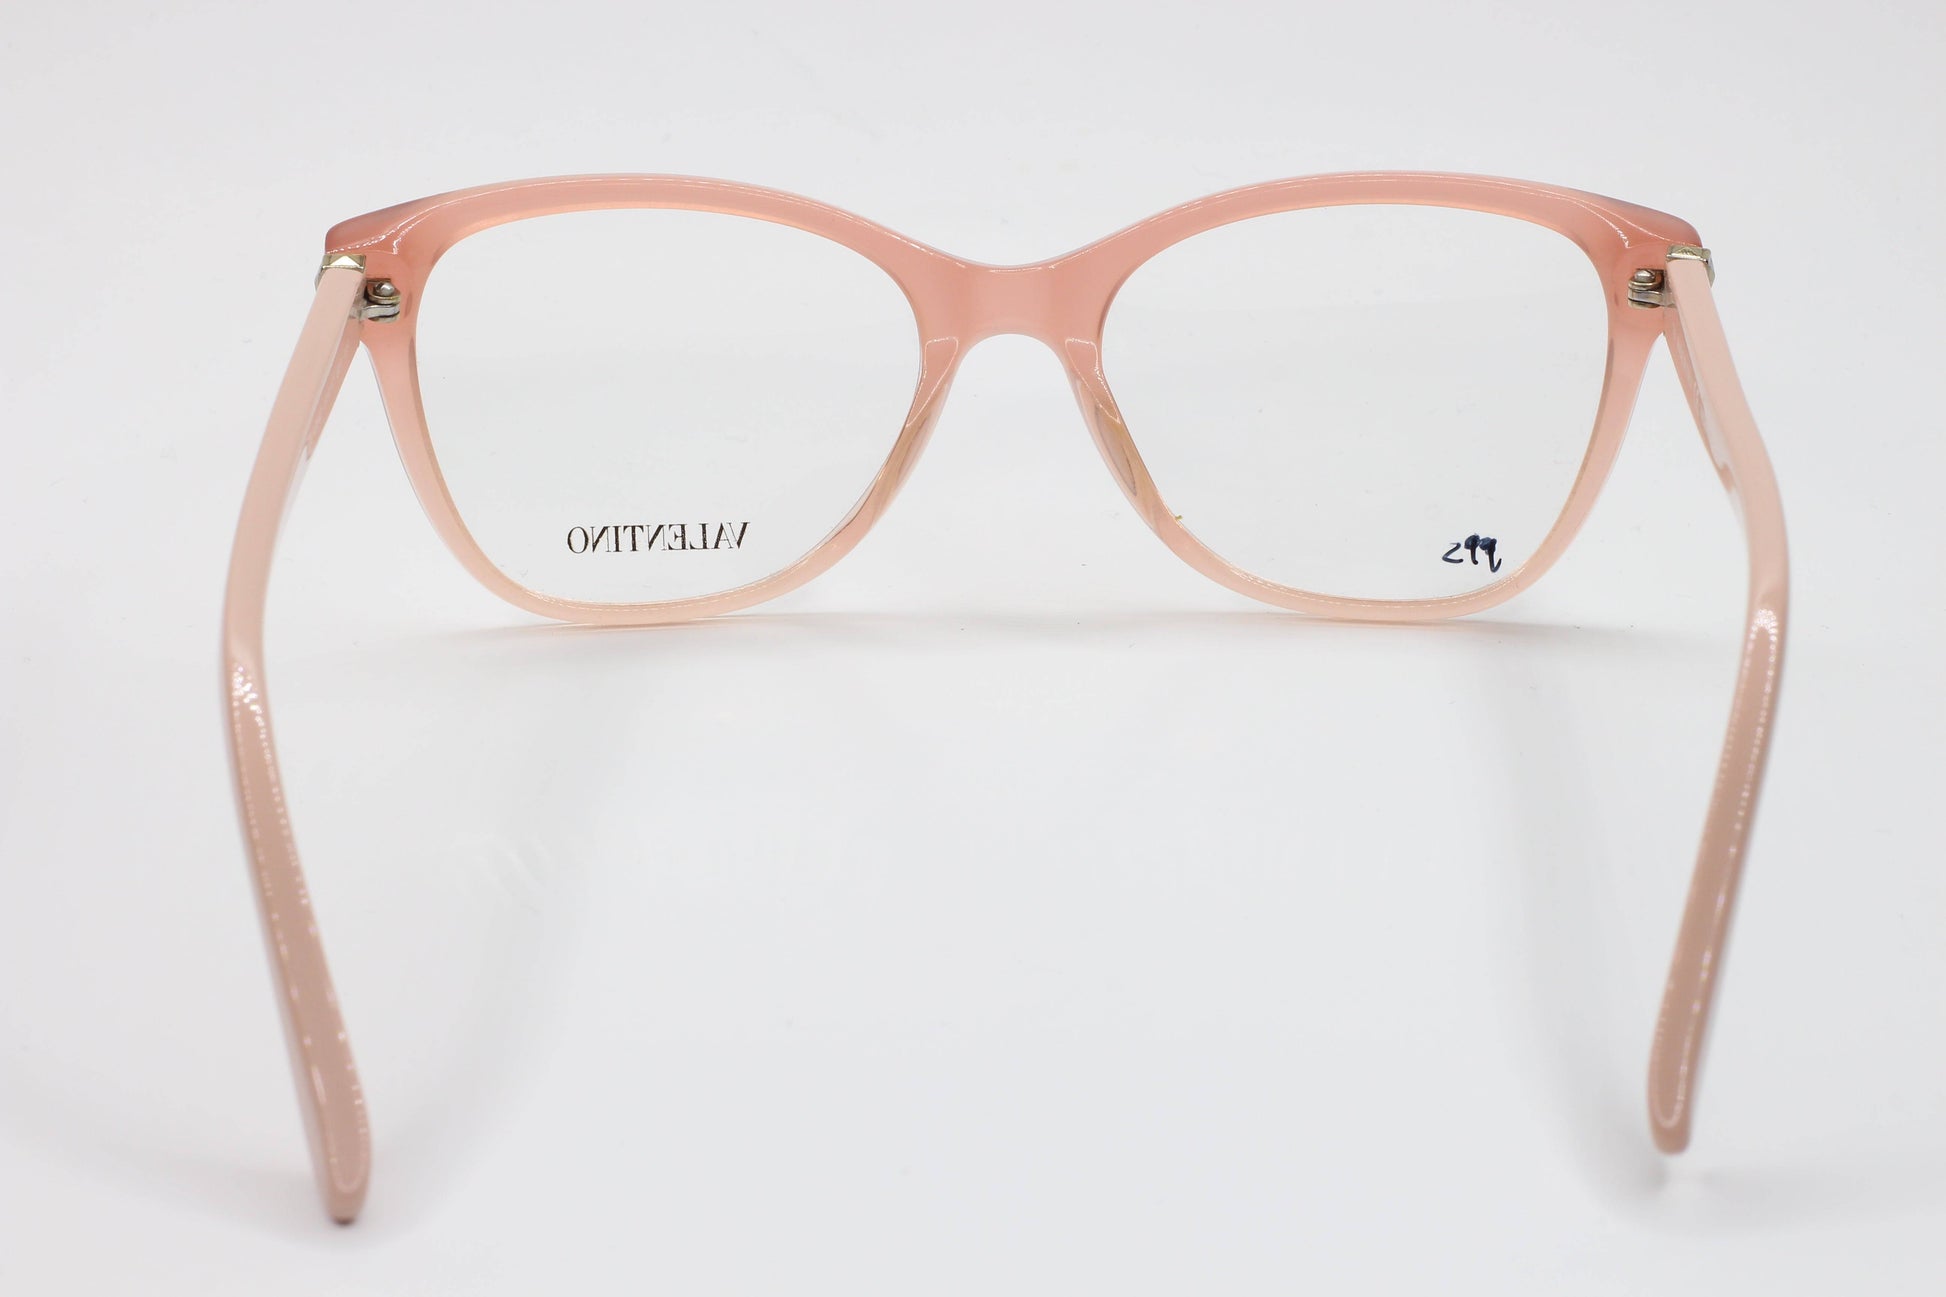 Valentino V2642 Transparent Pink Studded Square Eyeglasses Frames - 